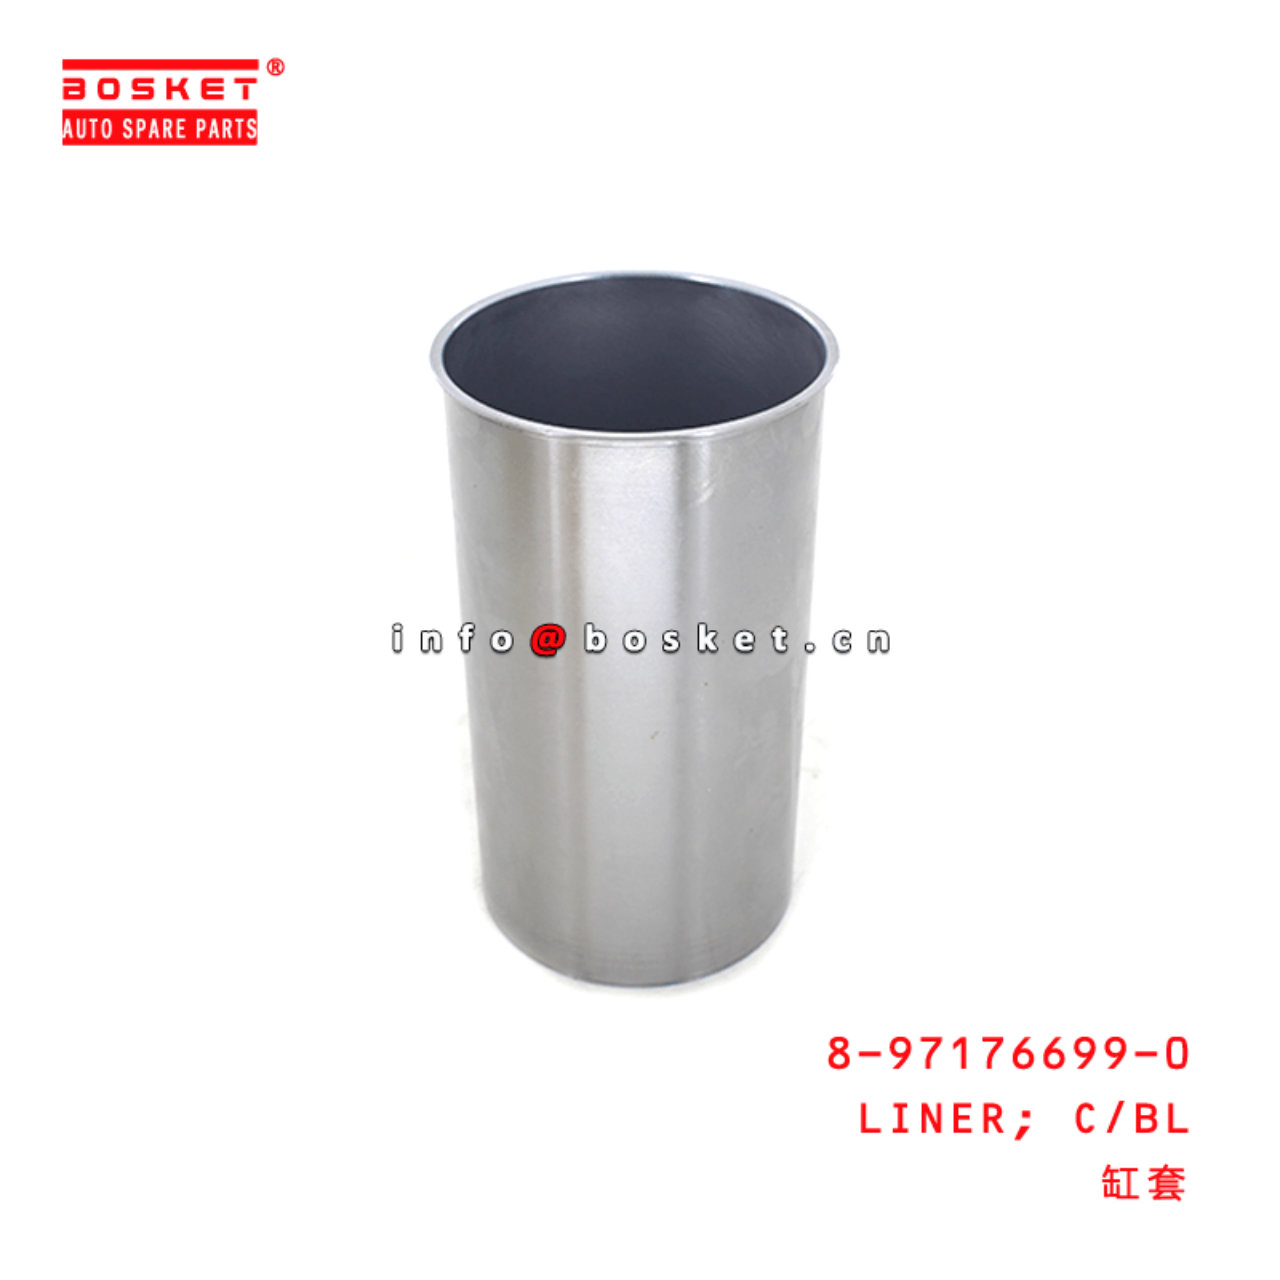  8-97176699-0 Cylinder Block Liner 8971766990 Suitable for ISUZU NHR 4JH1 4JG1